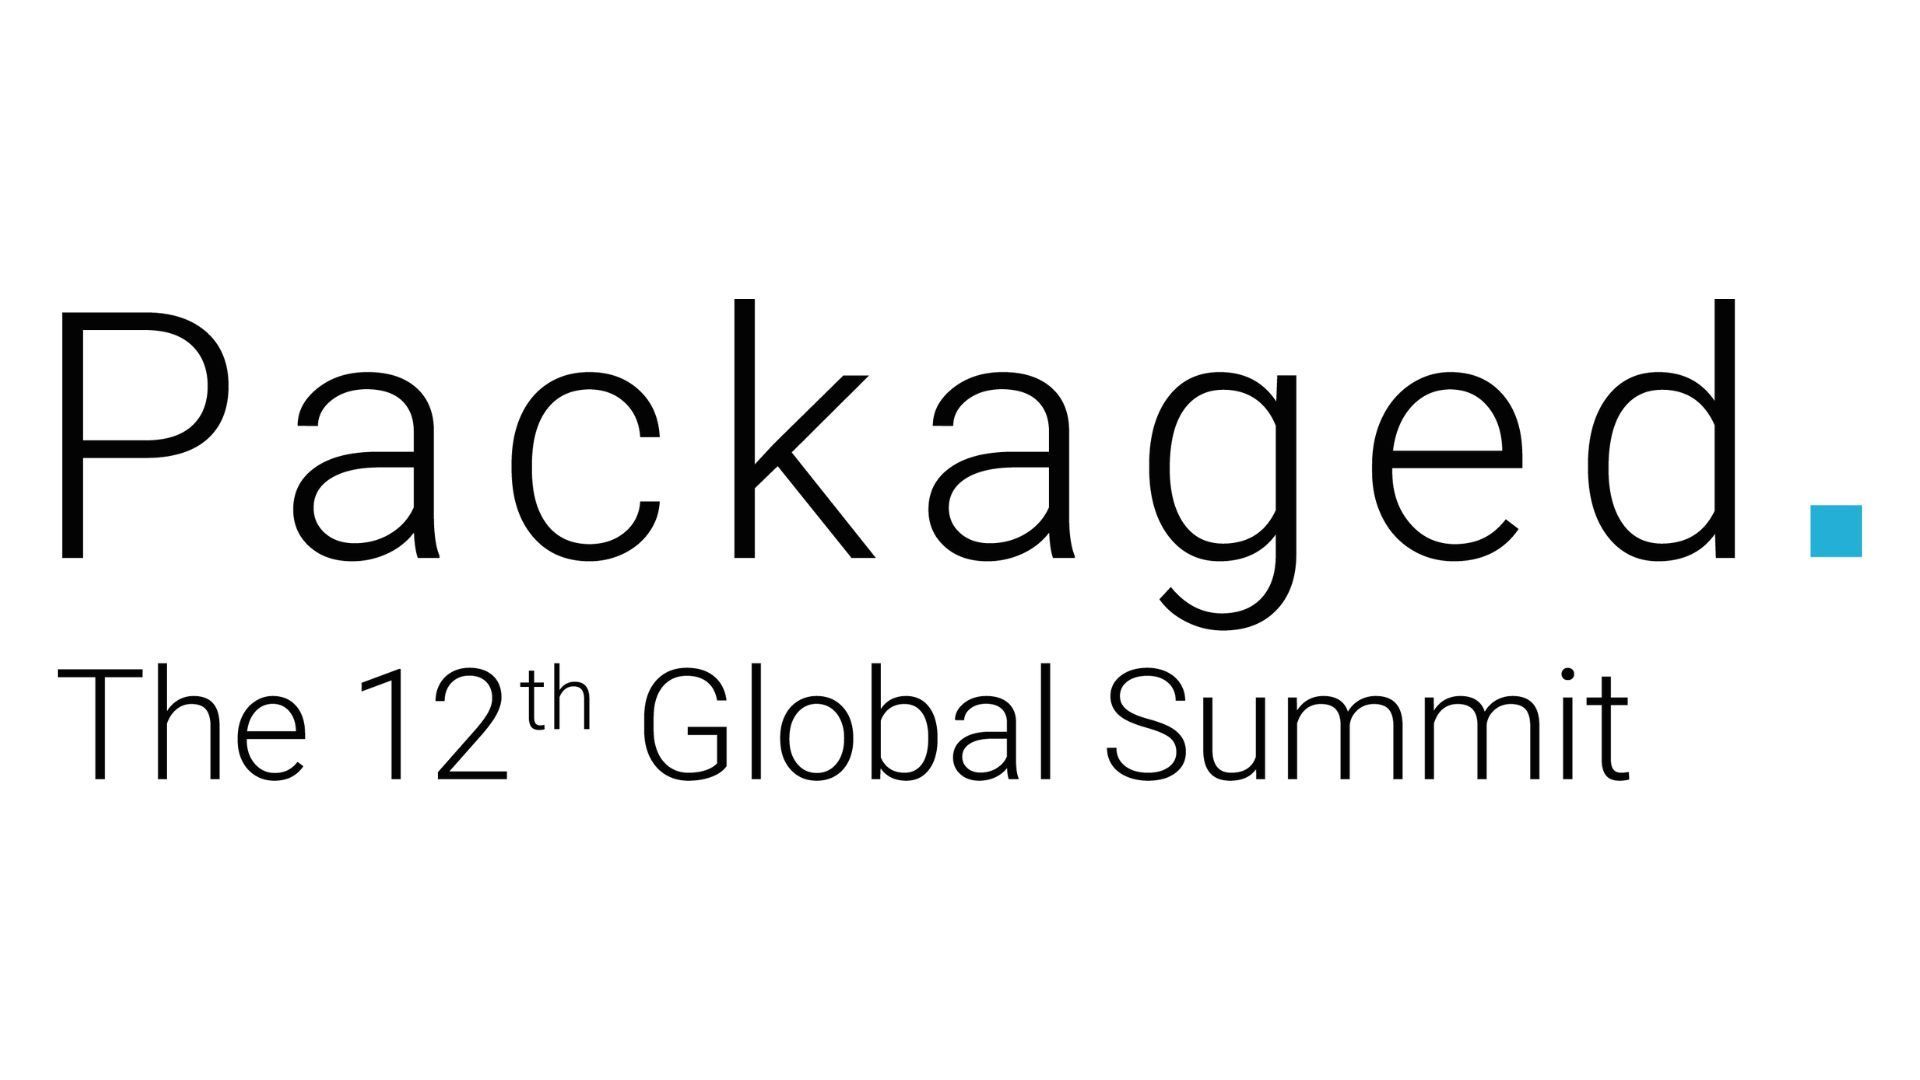 Global Packaged Summit 2023, Brussel, Belgium